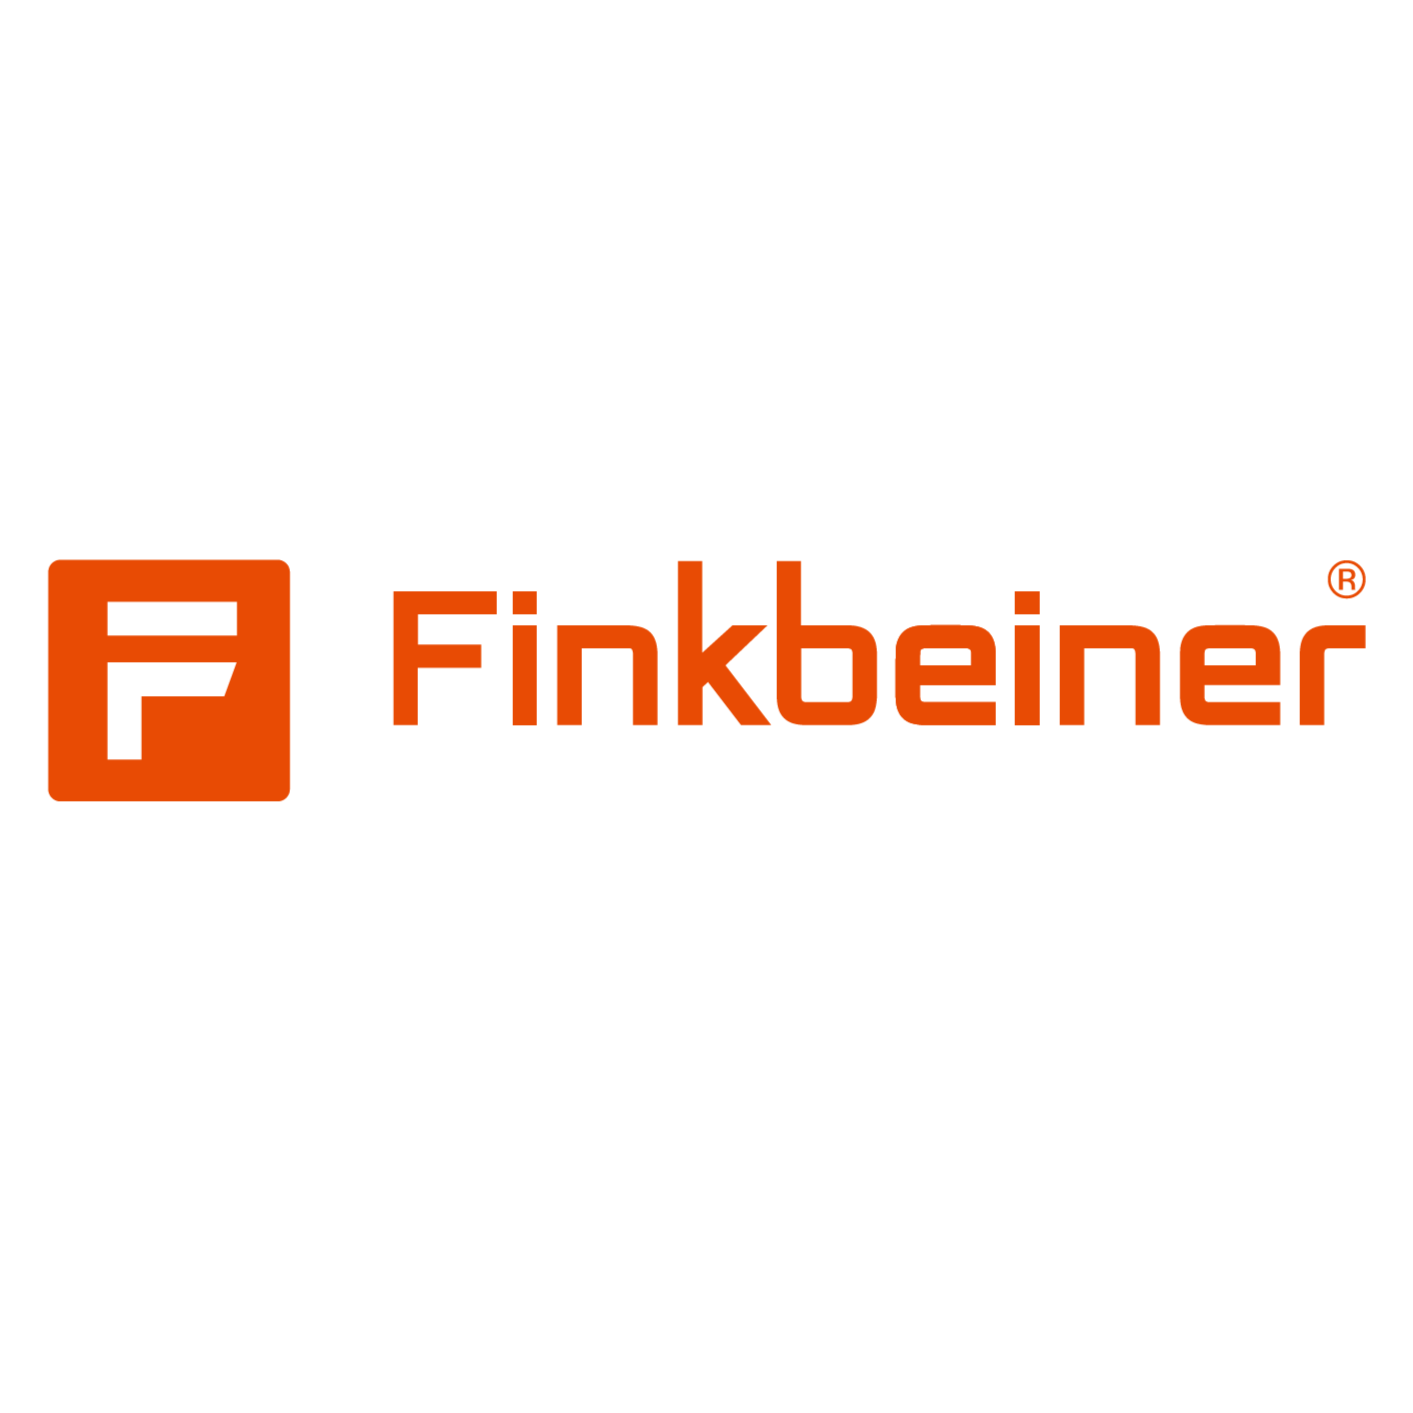 Finkbeiner